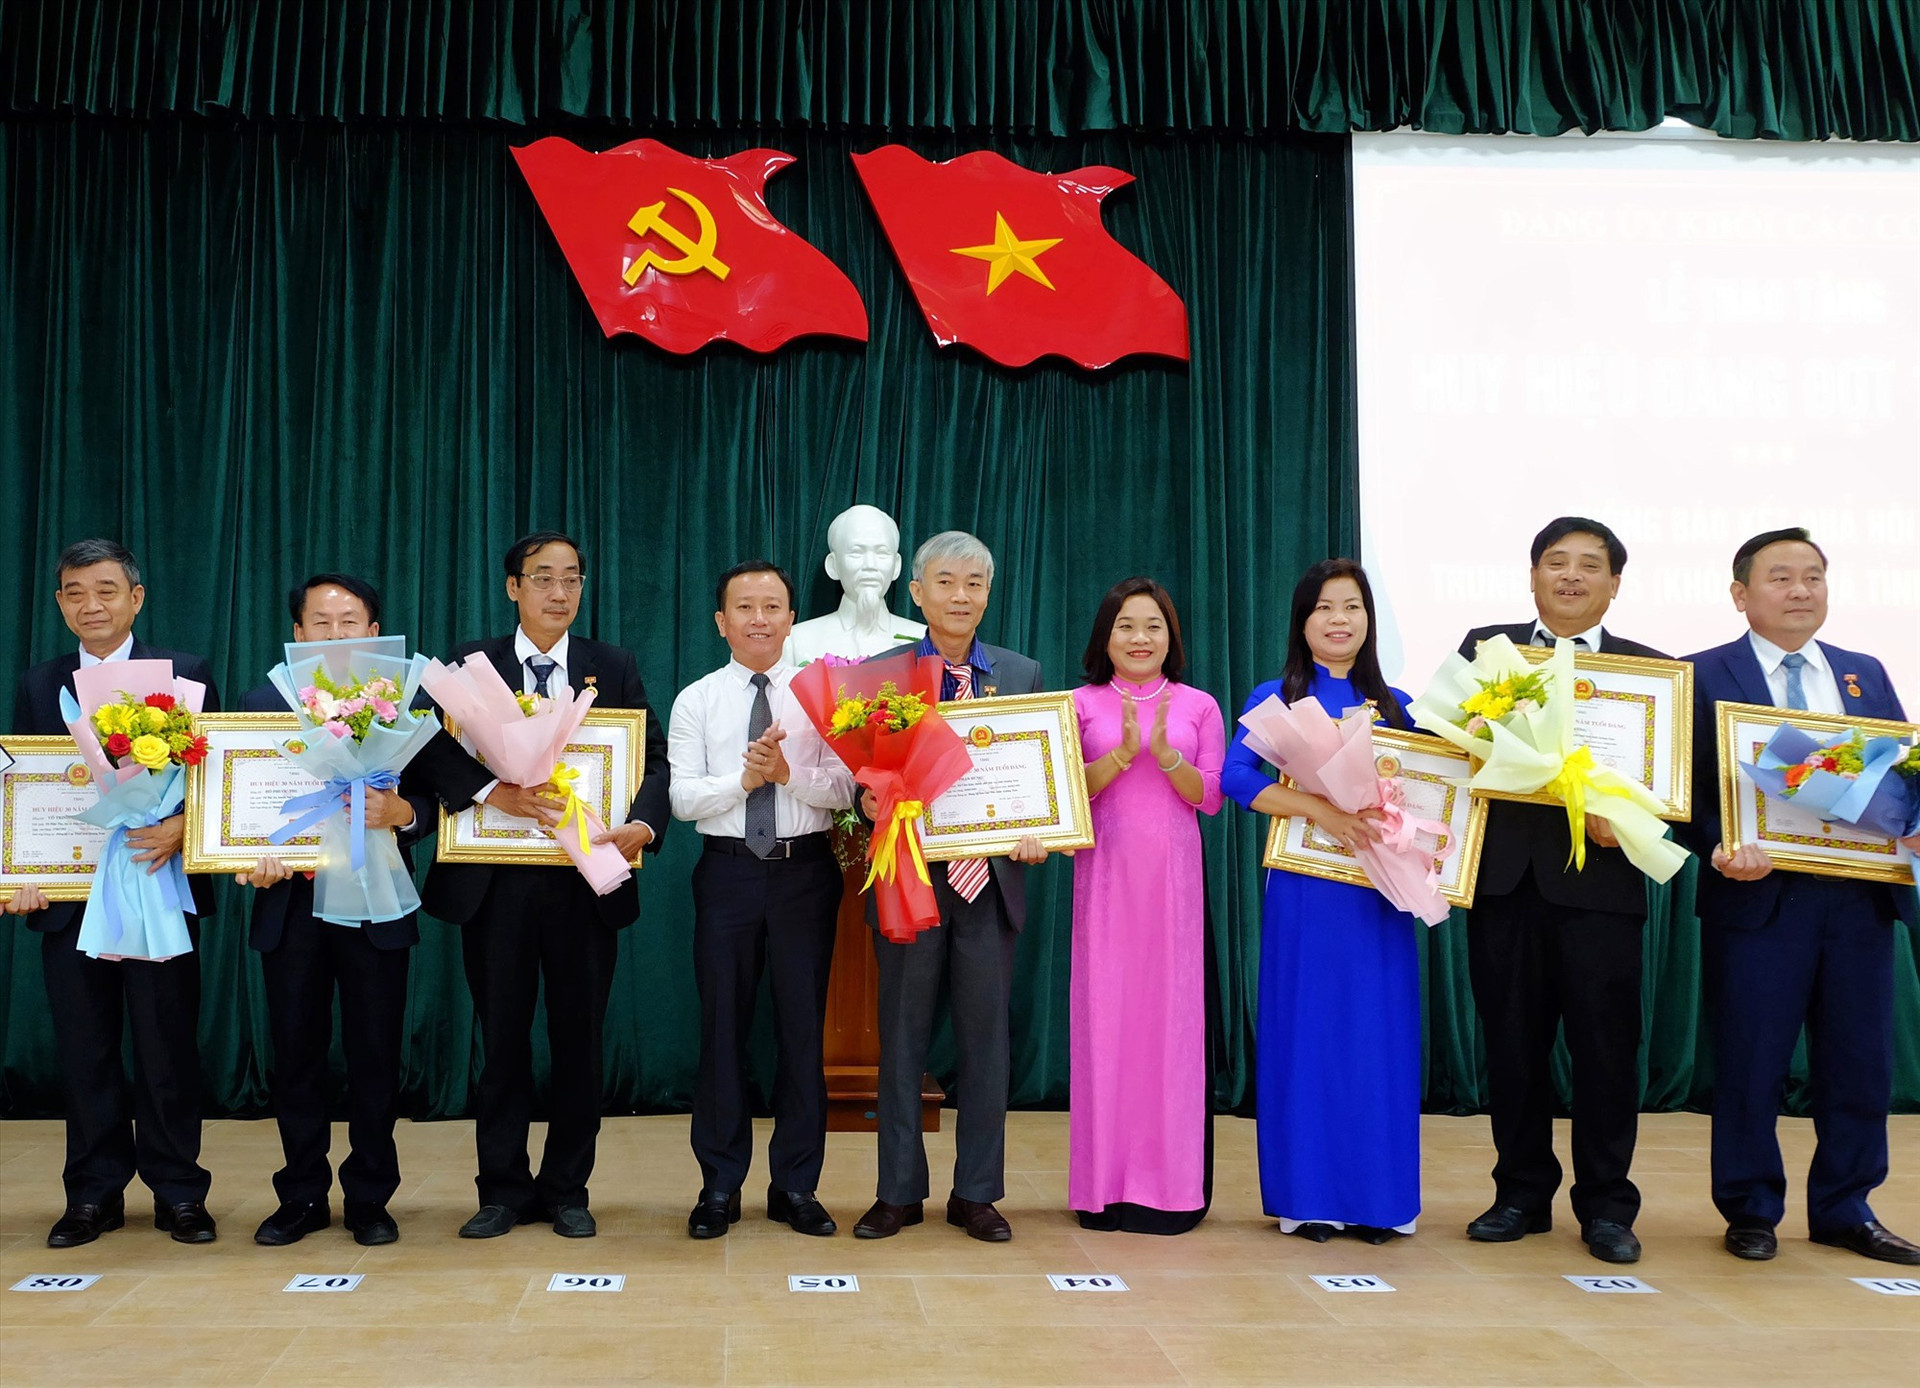 Ban Thường vụ Đảng ủy Khối các cơ quan tỉnh vừa tổ chức trao tặng Huy hiệu Đảng cho các đảng viên đang sinh hoạt tại các tổ chức đảng trực thuộc Đảng bộ Khối. Ảnh: N.Đ